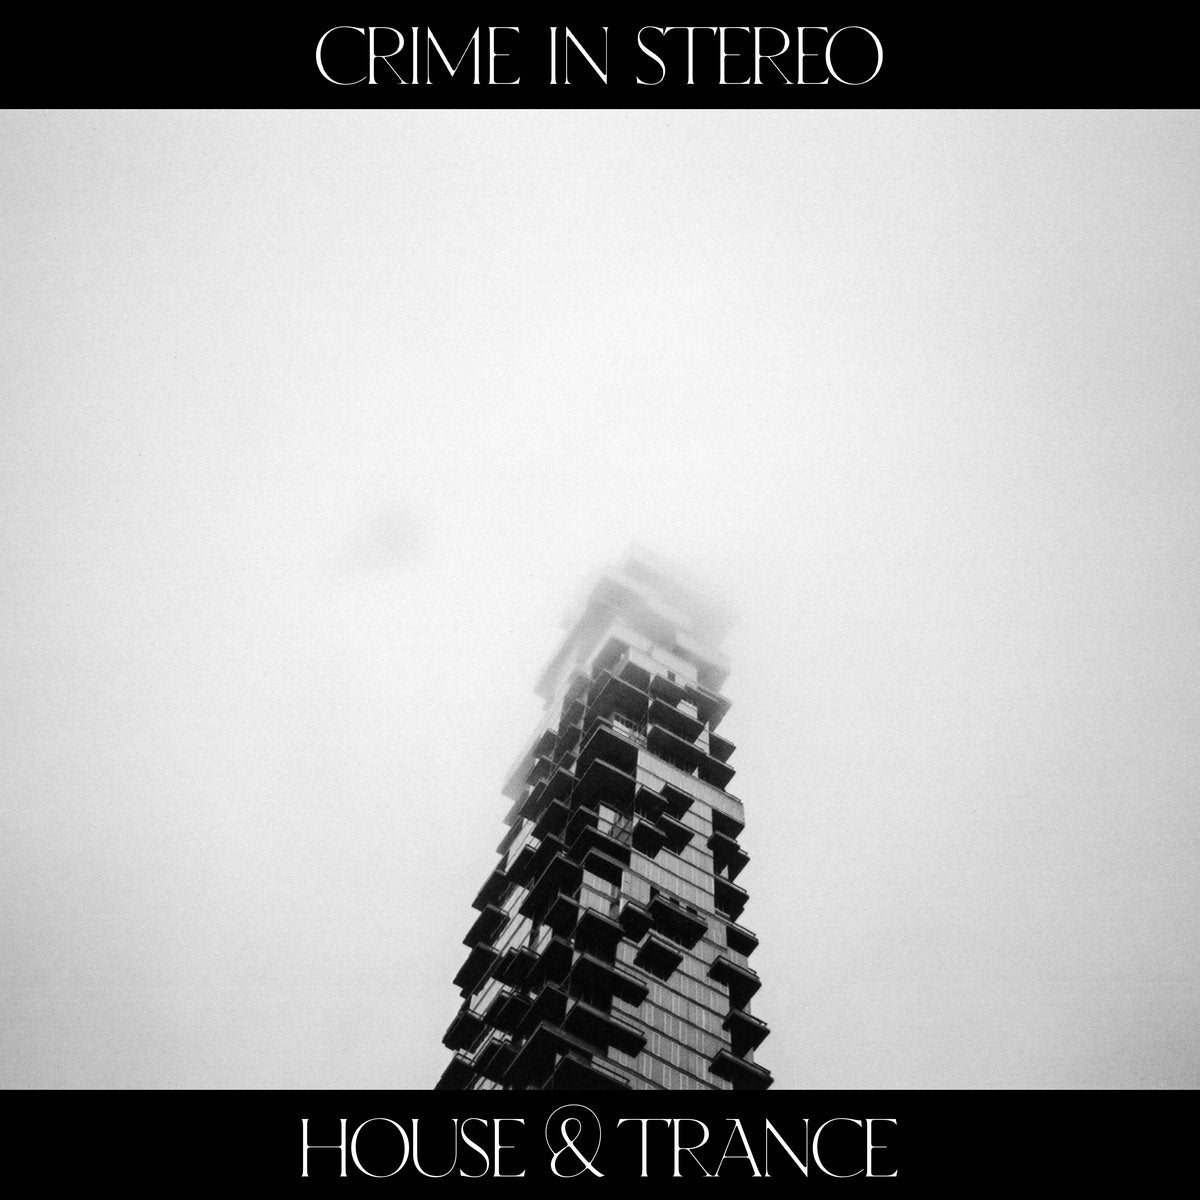 Crime In Stereo "House & Trance" 12" Vinyl